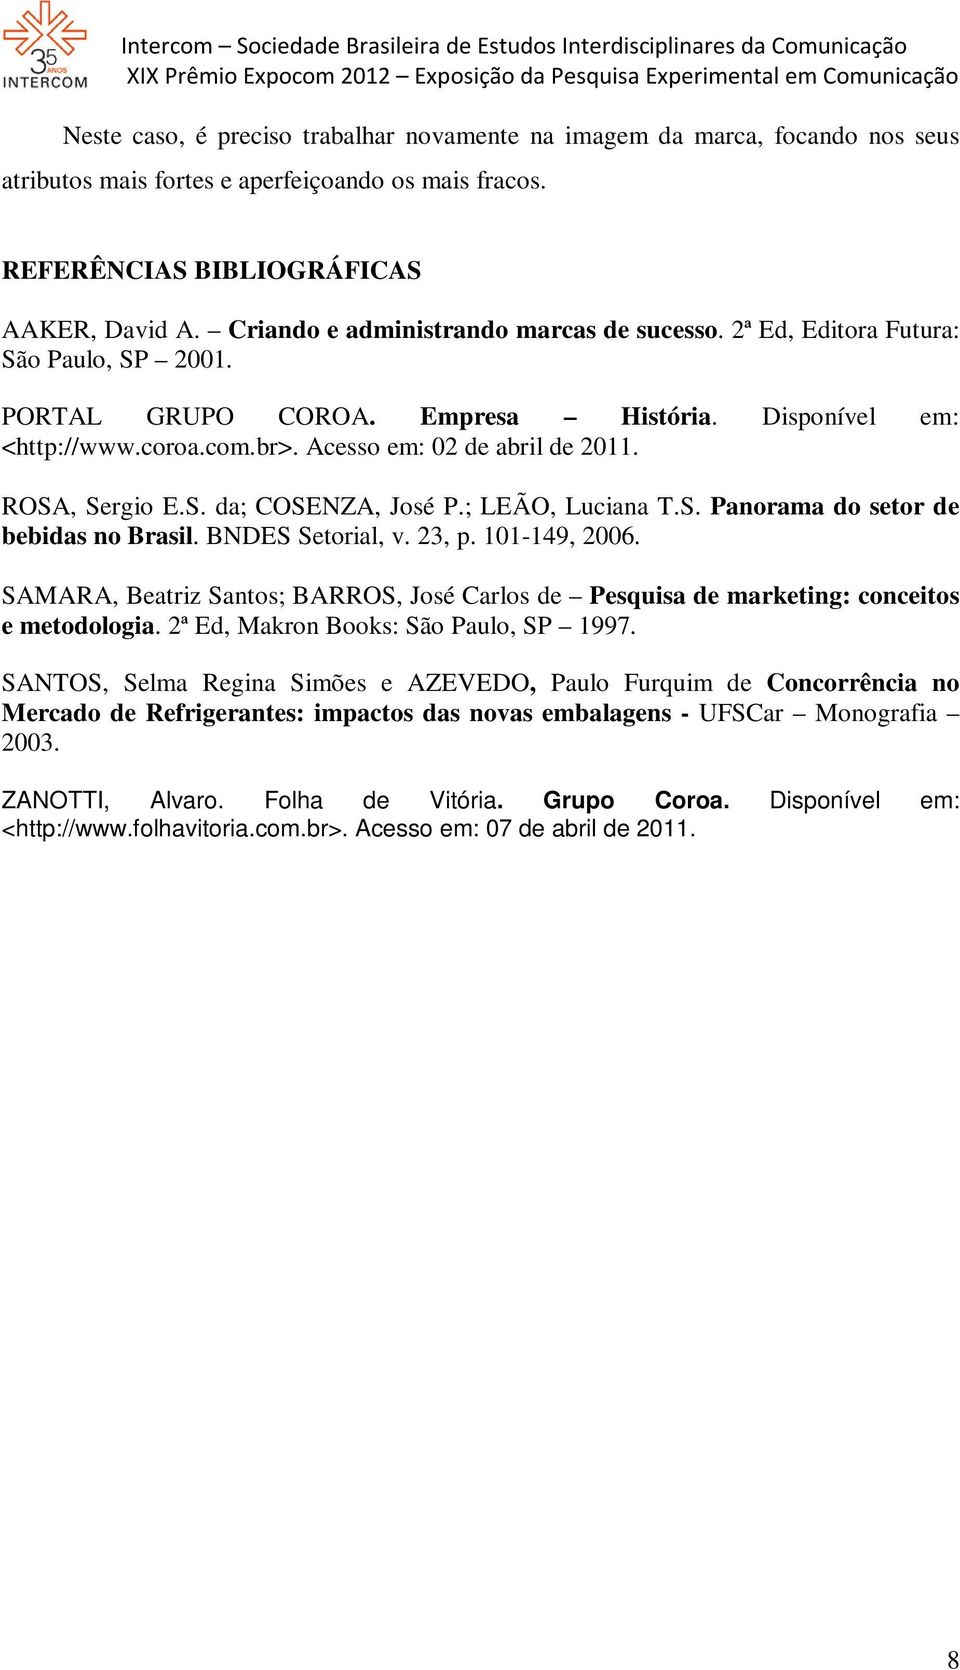 ROSA, Sergio E.S. da; COSENZA, José P.; LEÃO, Luciana T.S. Panorama do setor de bebidas no Brasil. BNDES Setorial, v. 23, p. 101-149, 2006.